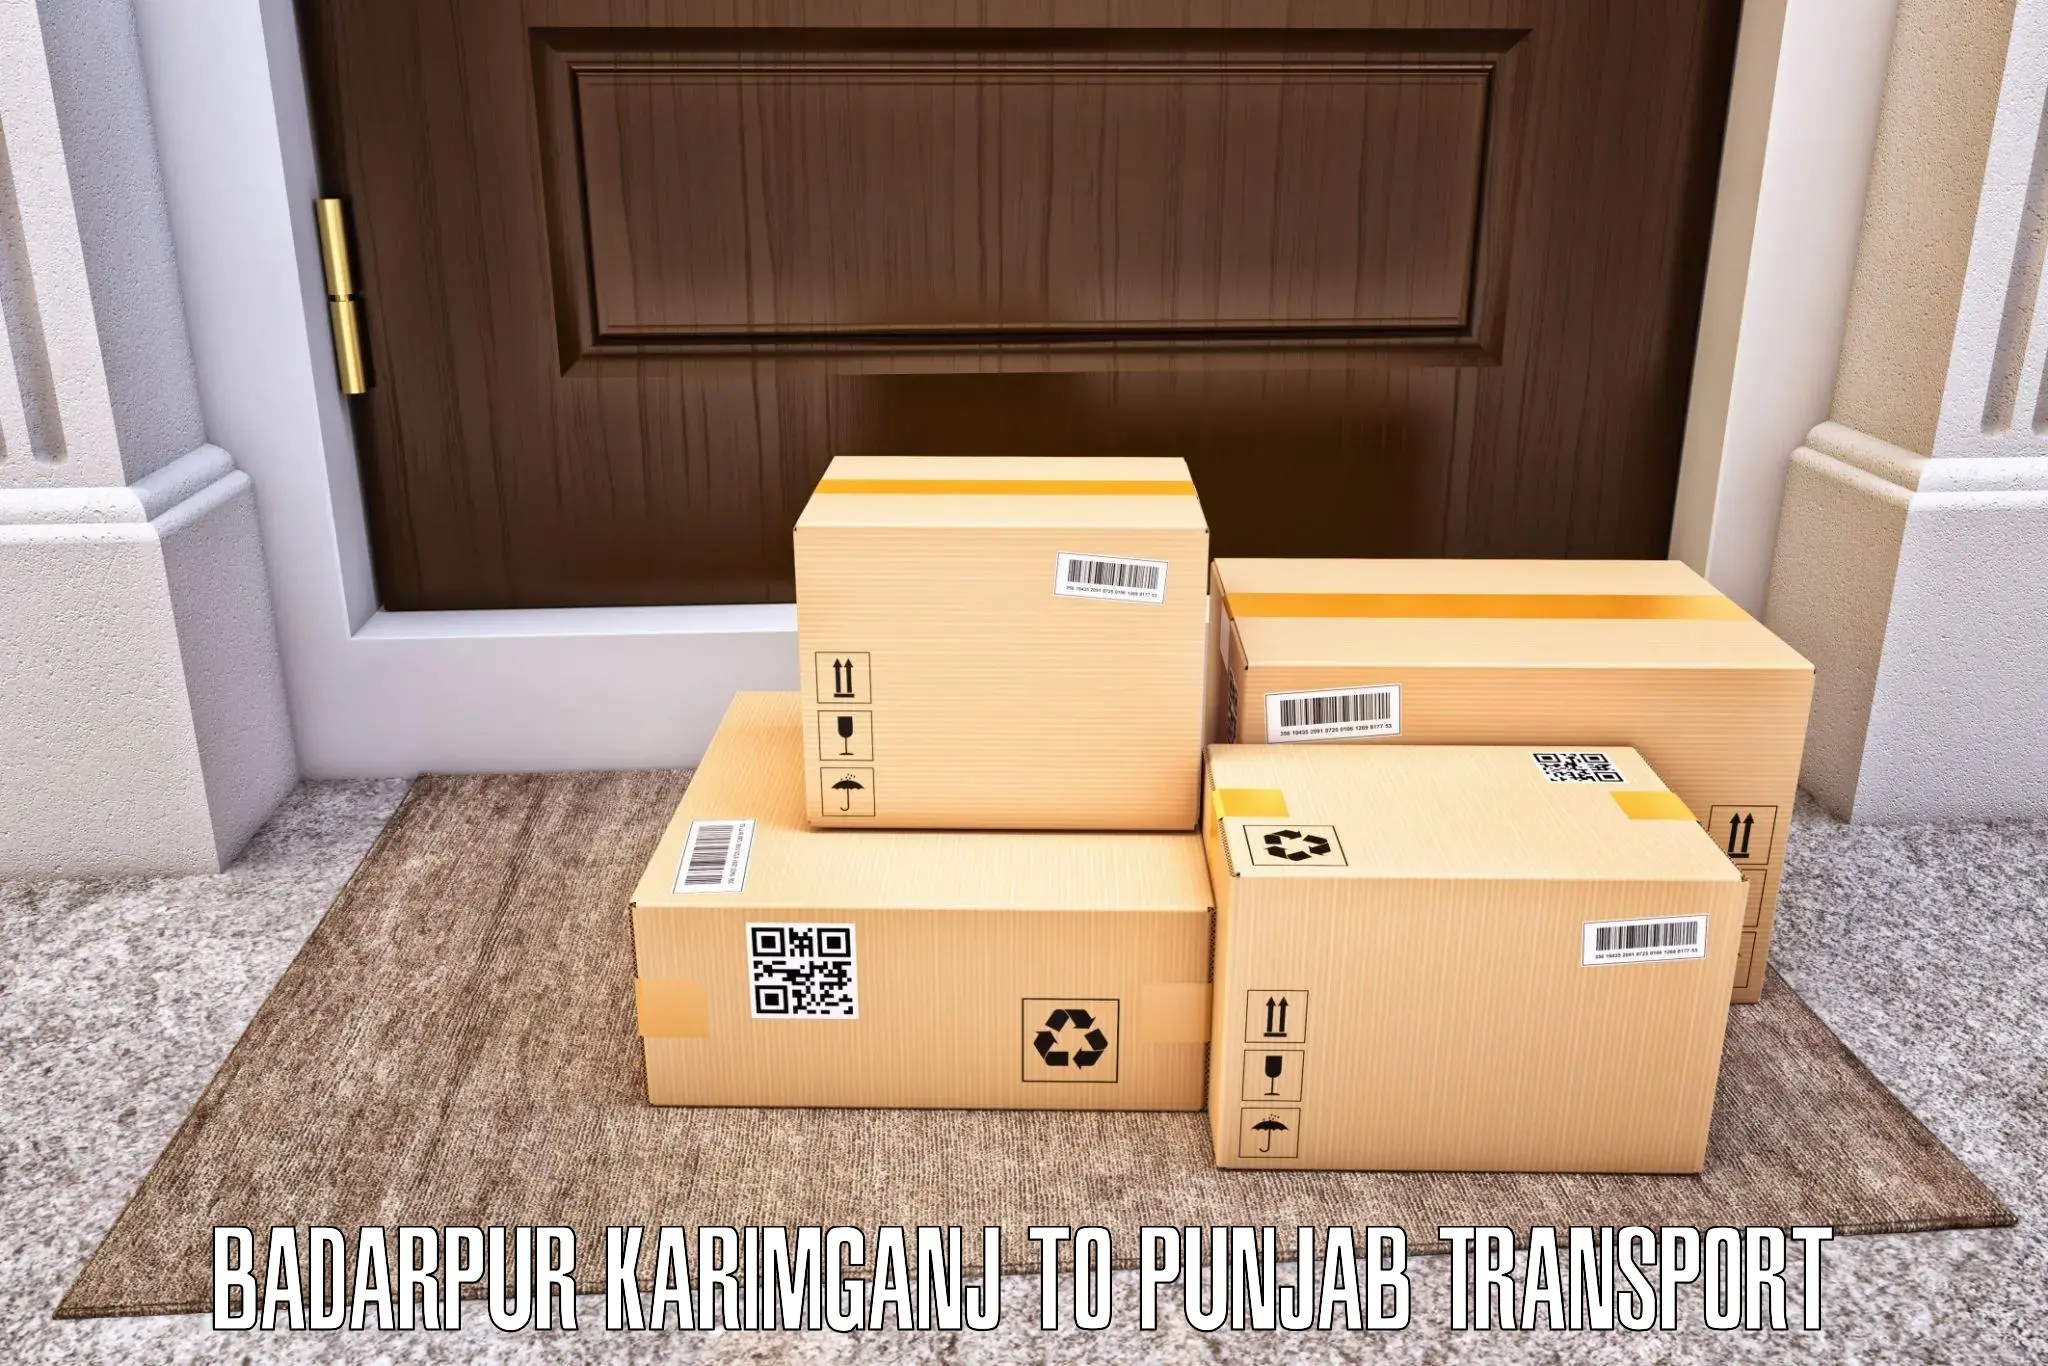 Transport in sharing Badarpur Karimganj to Punjab